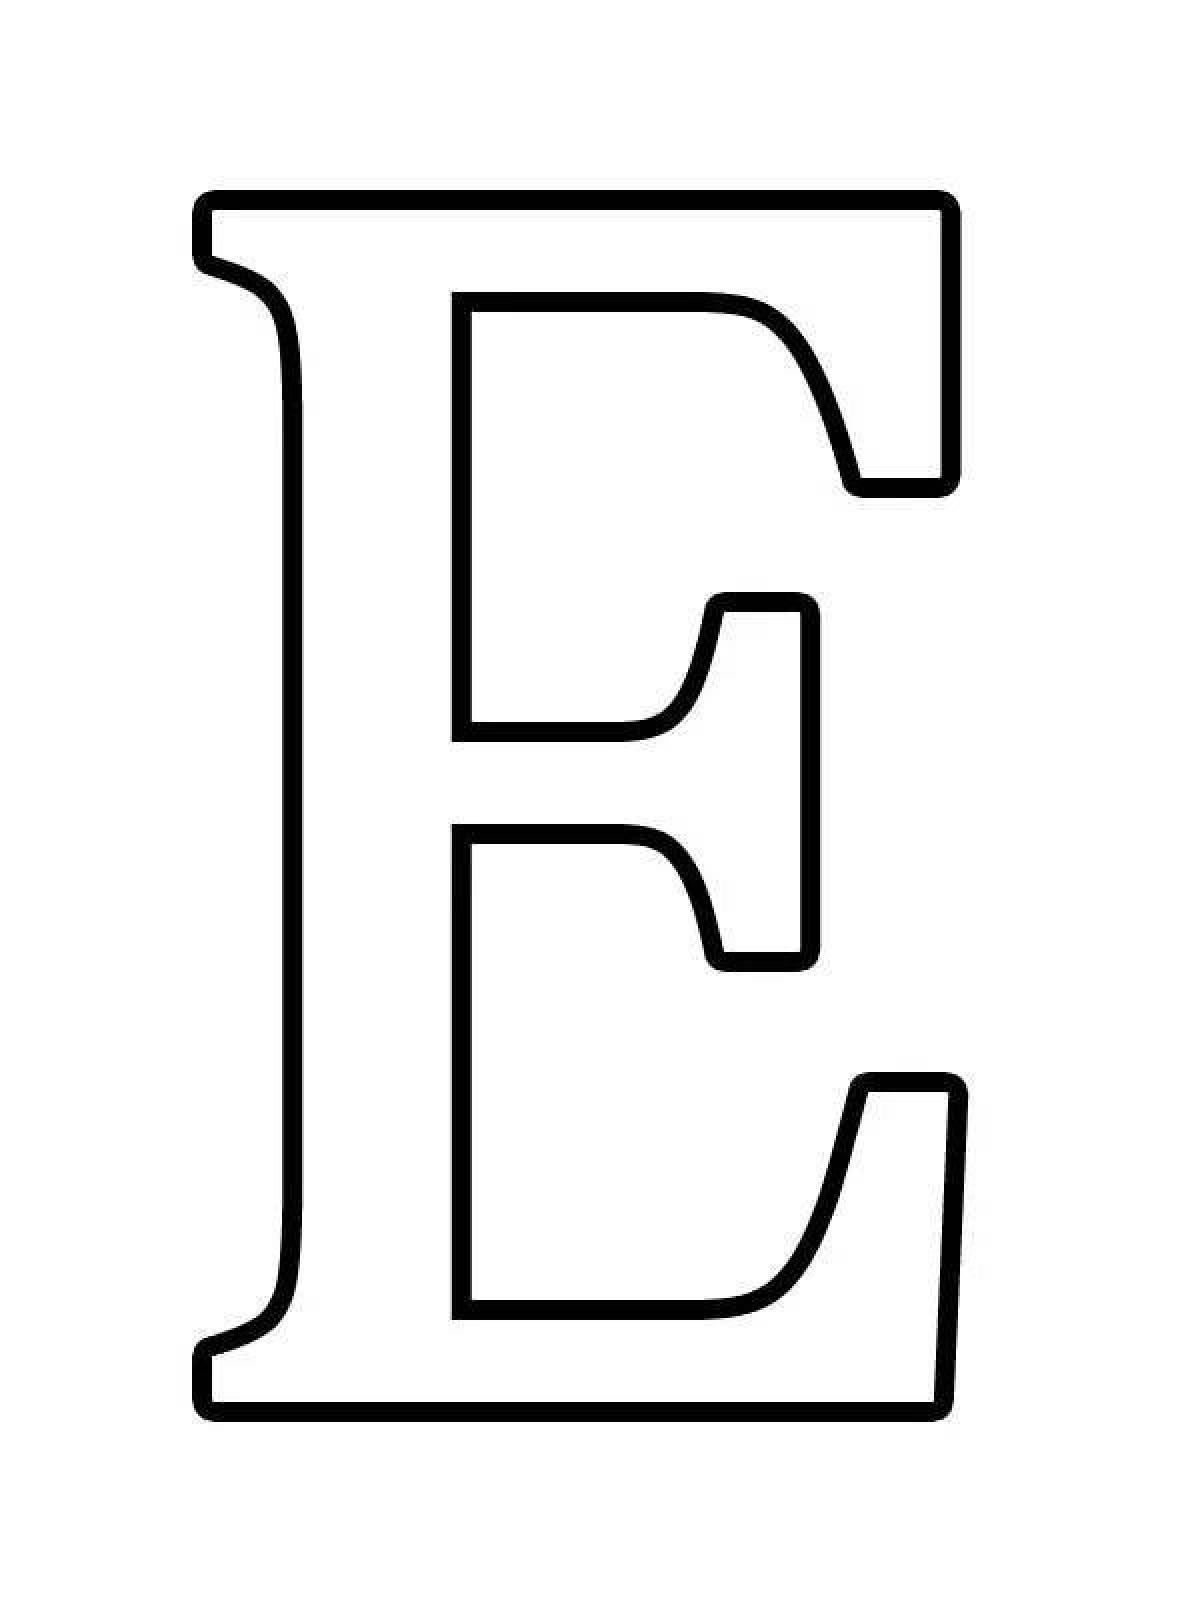 Провокационная раскраска буквы русского алфавита по отдельности